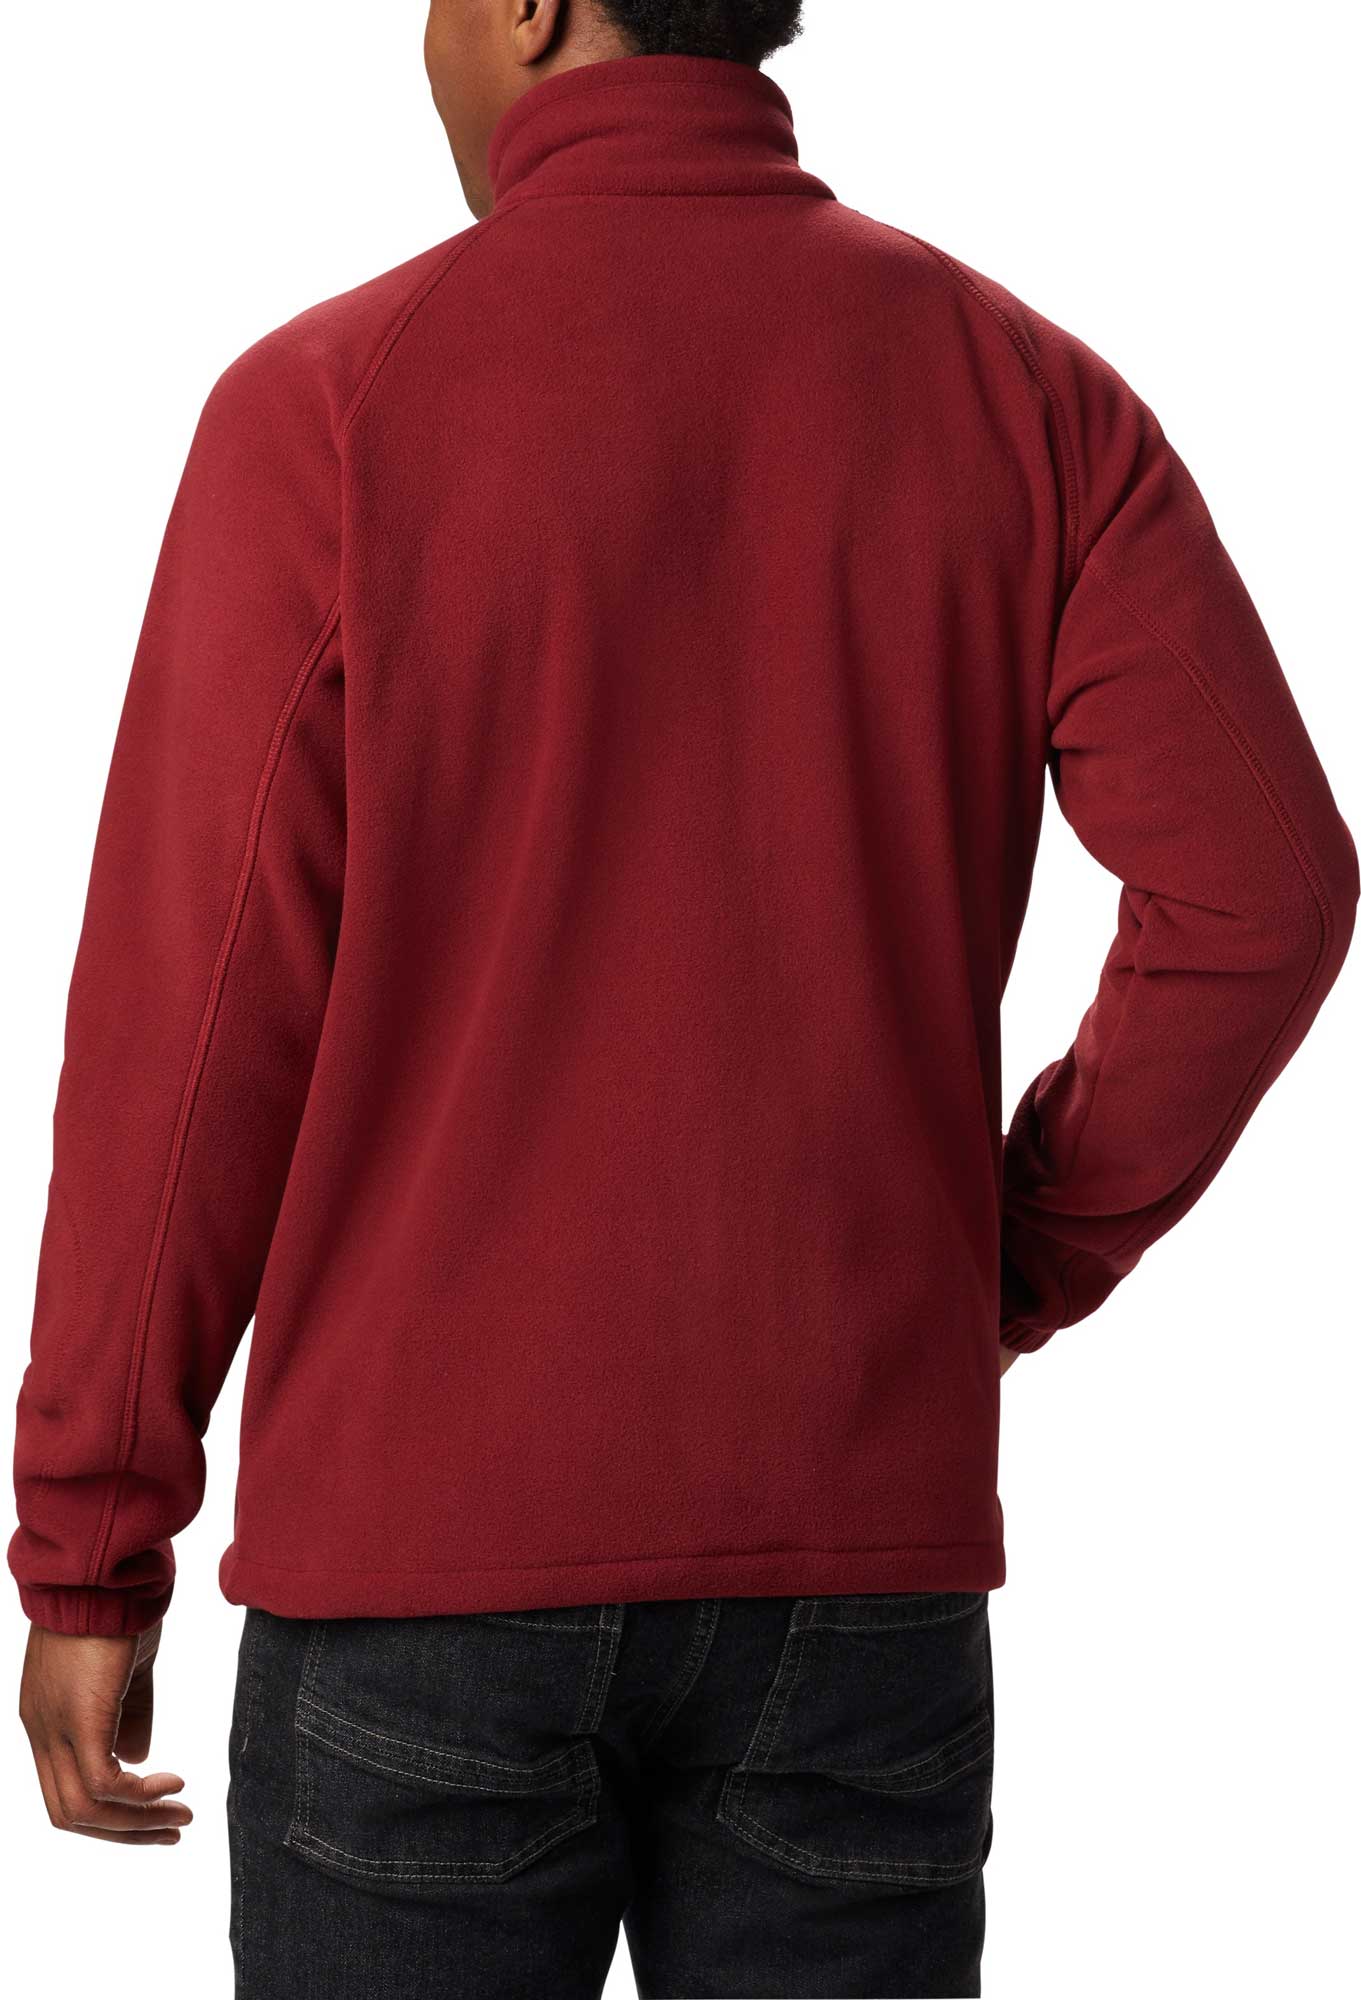 Men’s sweatshirt